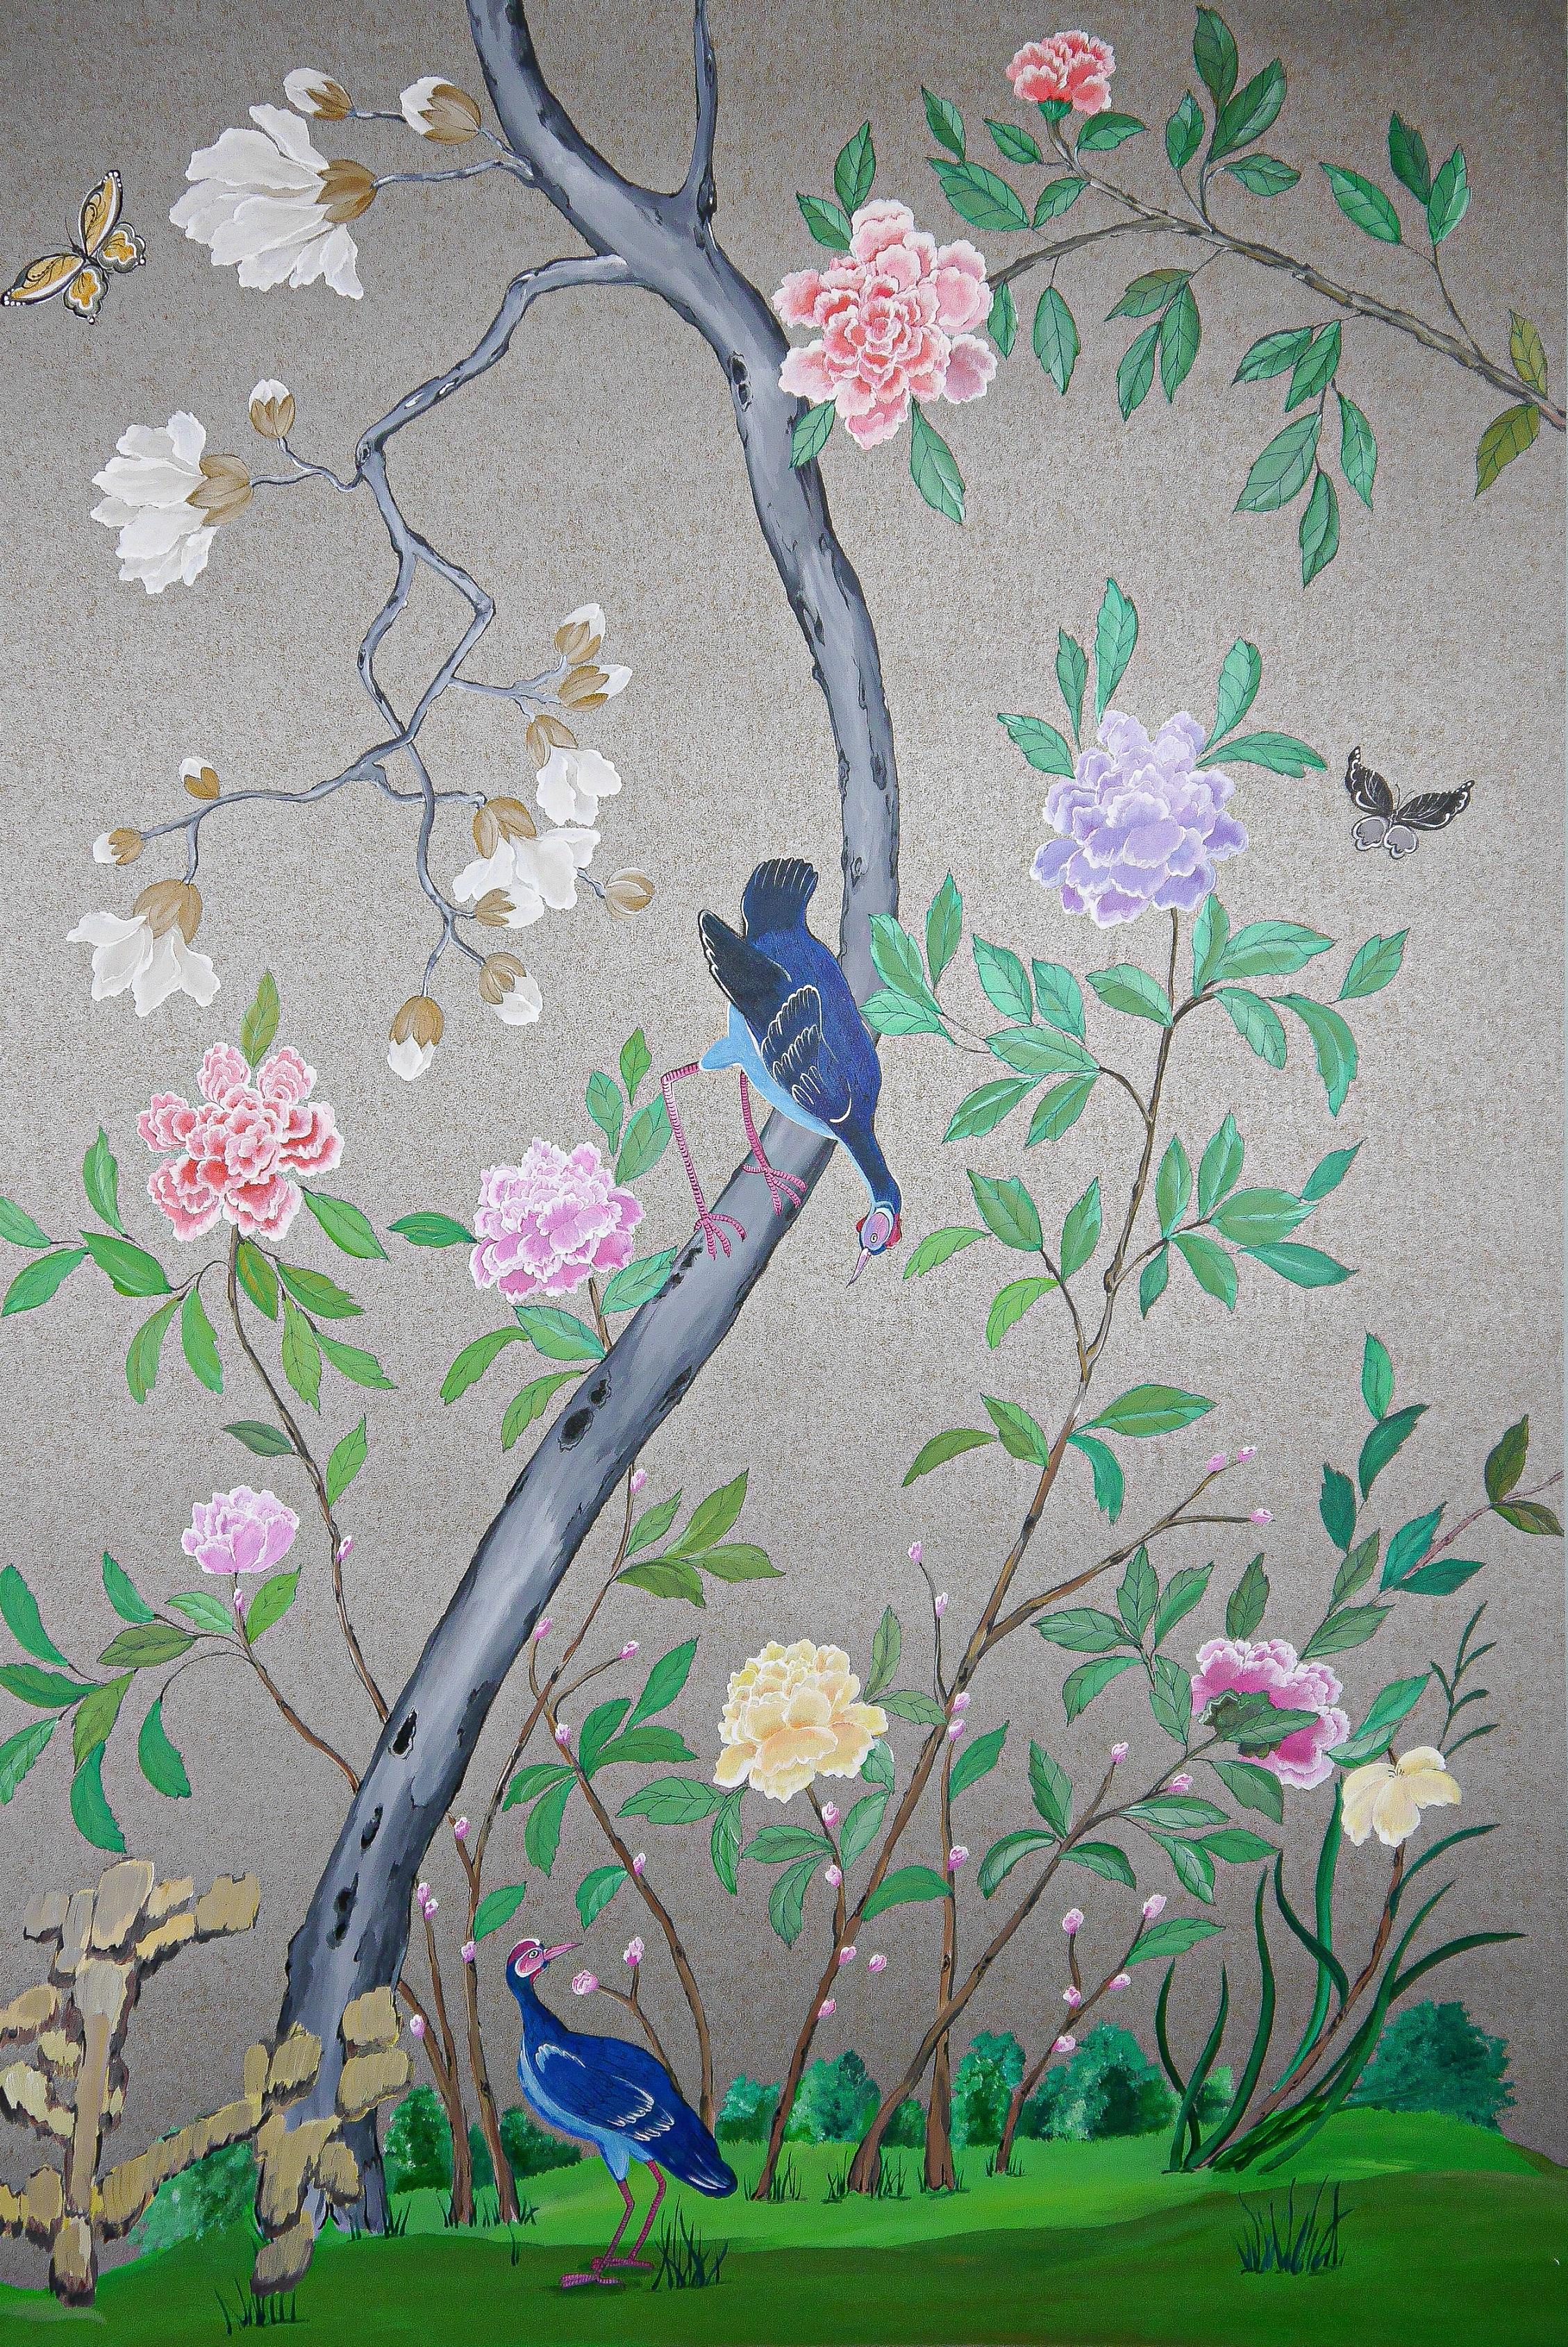 Berkeley: eine Reproduktion chinesischer Tapetenplatten, datiert 1790-1810, vorrätig. Eine Suite von 24 chinesischen Exporttapeten wurde bei Sotheby's für 137500 GBP verkauft.

Dies ist eine kundenspezifische Bestellung für einen Satz von 3 Paneelen